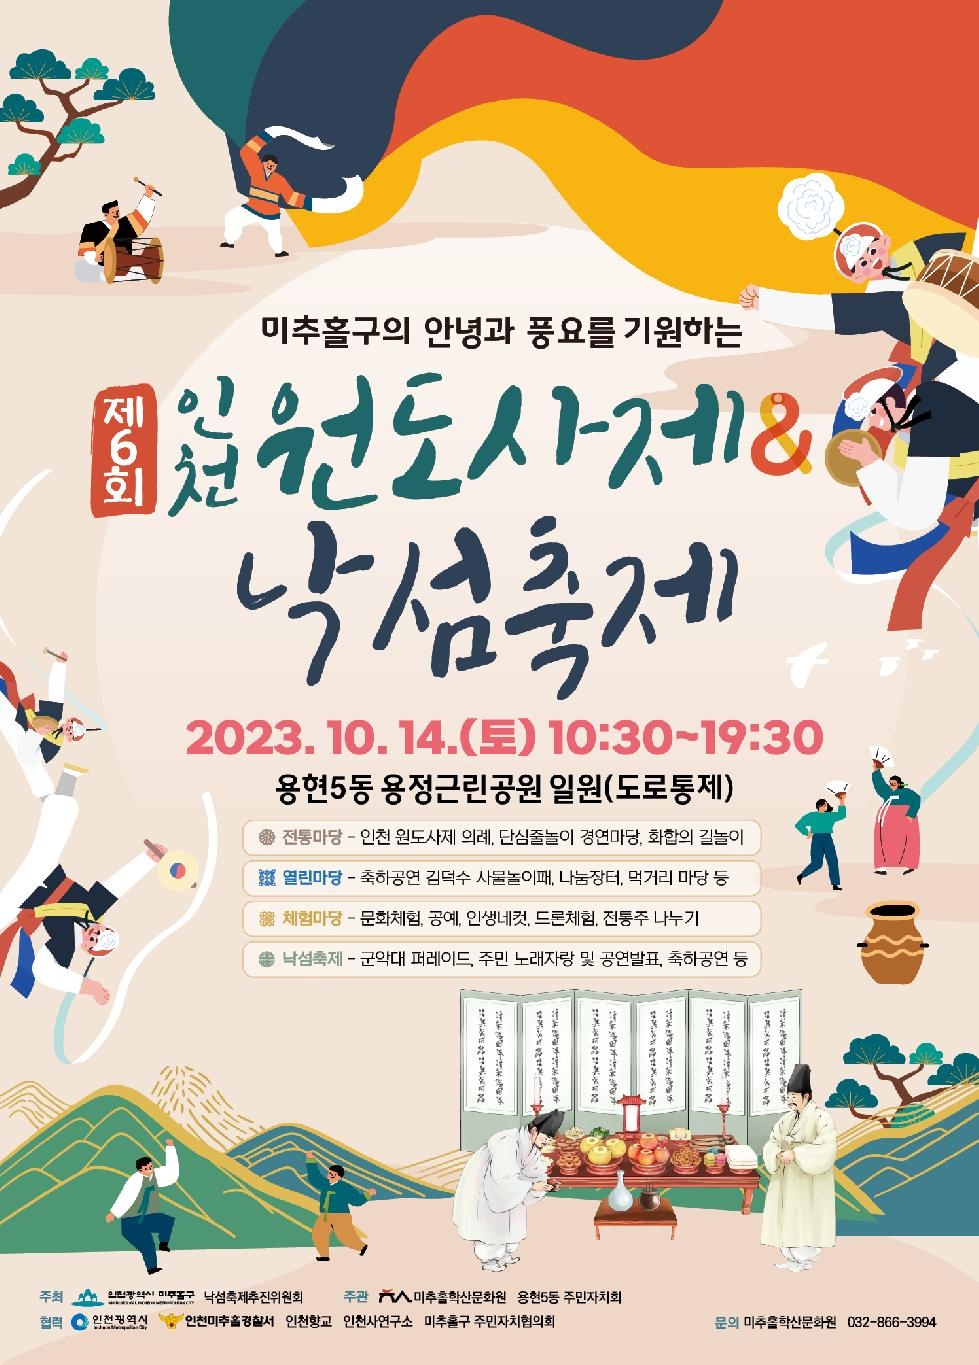 인천 미추홀구, 오는 14일 ‘제6회 인천 원도사제’ 개최해